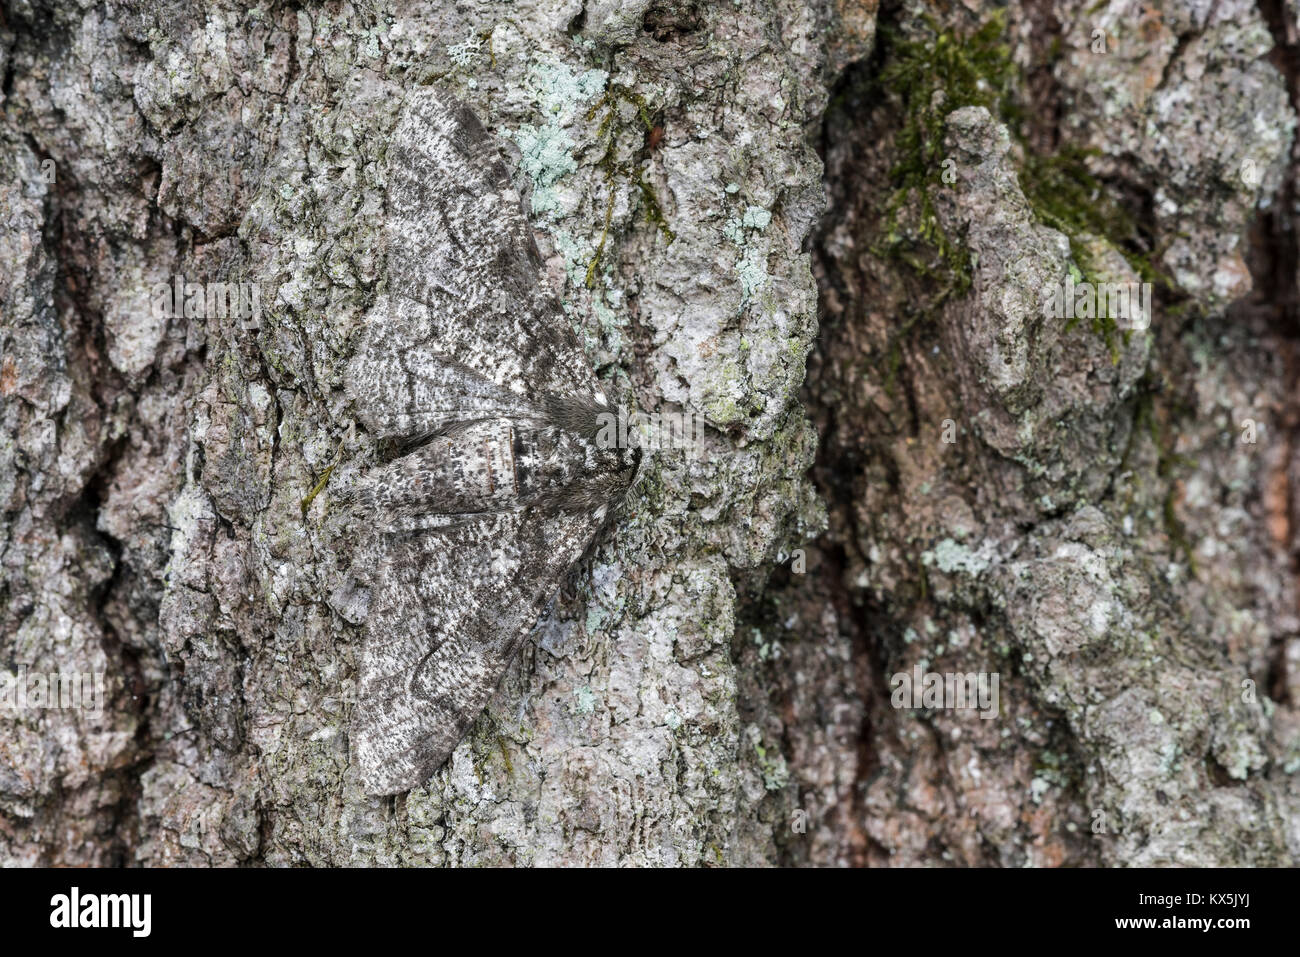 Poivre et sel Geometer espèce camouflée sur écorce de chêne. Cove Mountain (CNC) Préserver, Perry County, Ohio, le ressort. Banque D'Images